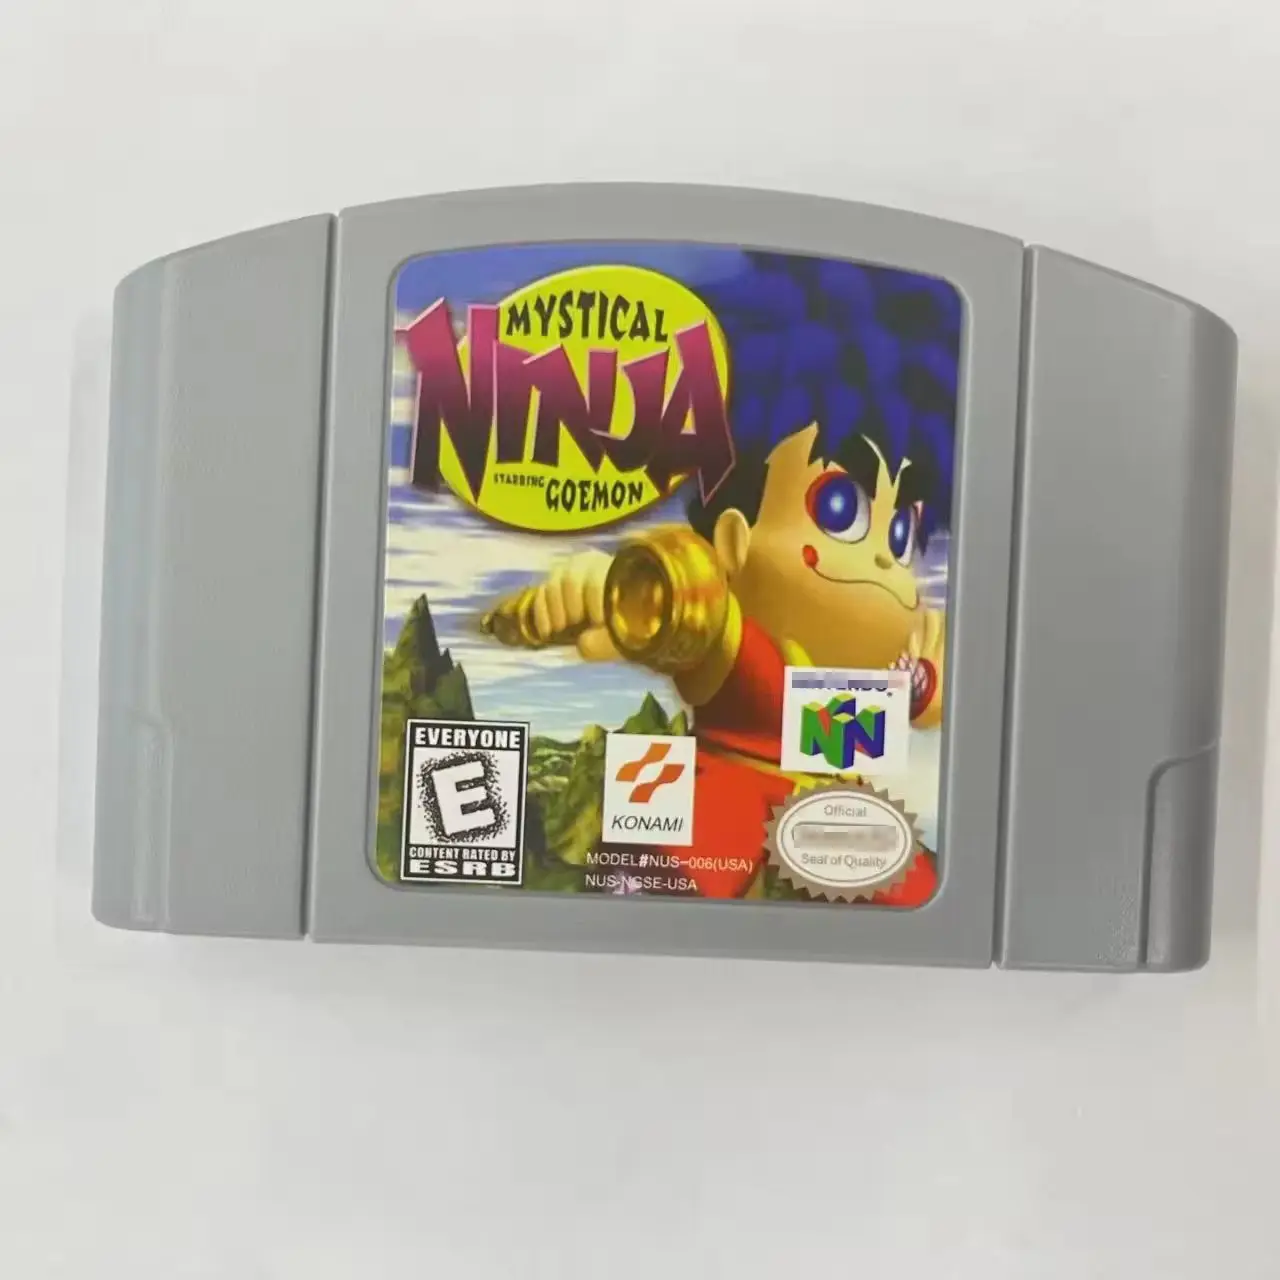 ตลับหมึกเกม Ninja ซิงโจ้ N64 สําหรับ Nintendo 64 รุ่น US